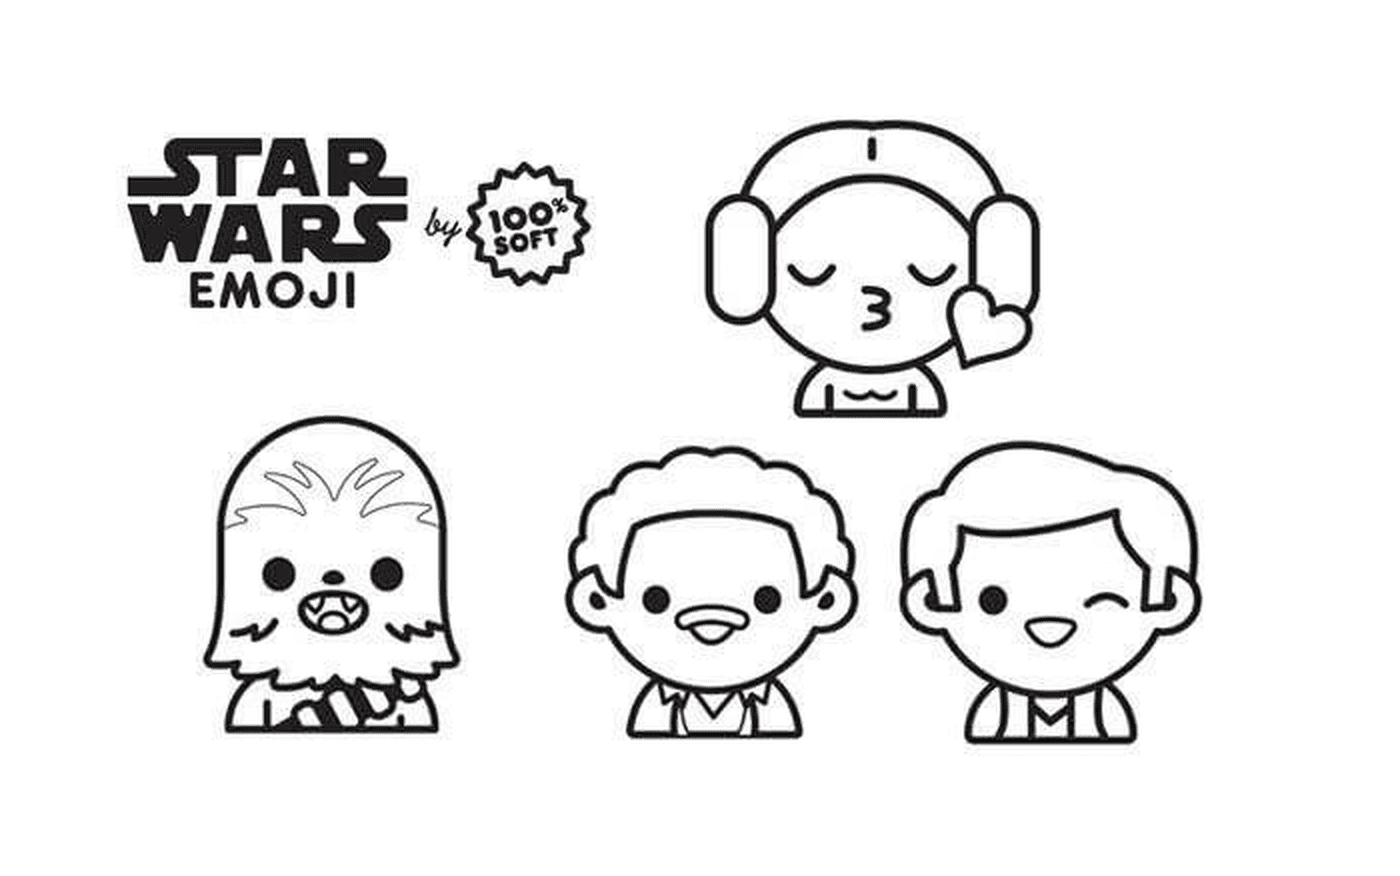  Diferentes caras de Star Wars están representadas 